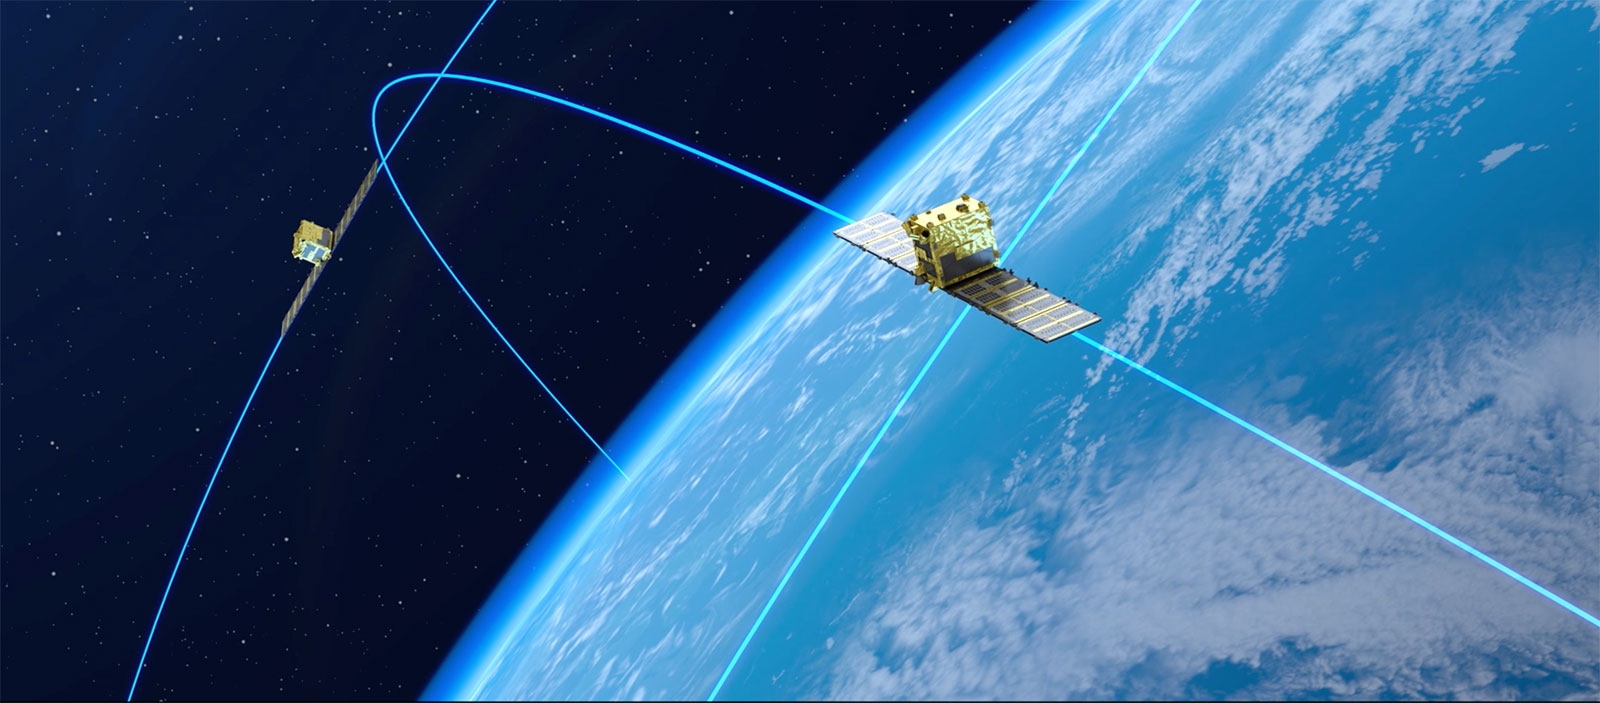 日本のSynspectiveが開発中のSAR衛星「StriX-α」の運用イメージ Xバンド（8～12GHz帯）の電波を使う合成開口レーダーを搭載。2022年には6機体制でサービスインを予定している。将来的には25機体制を構築して世界中の任意の地点を1日1回は観測できるようにする。（出所：Synspective）